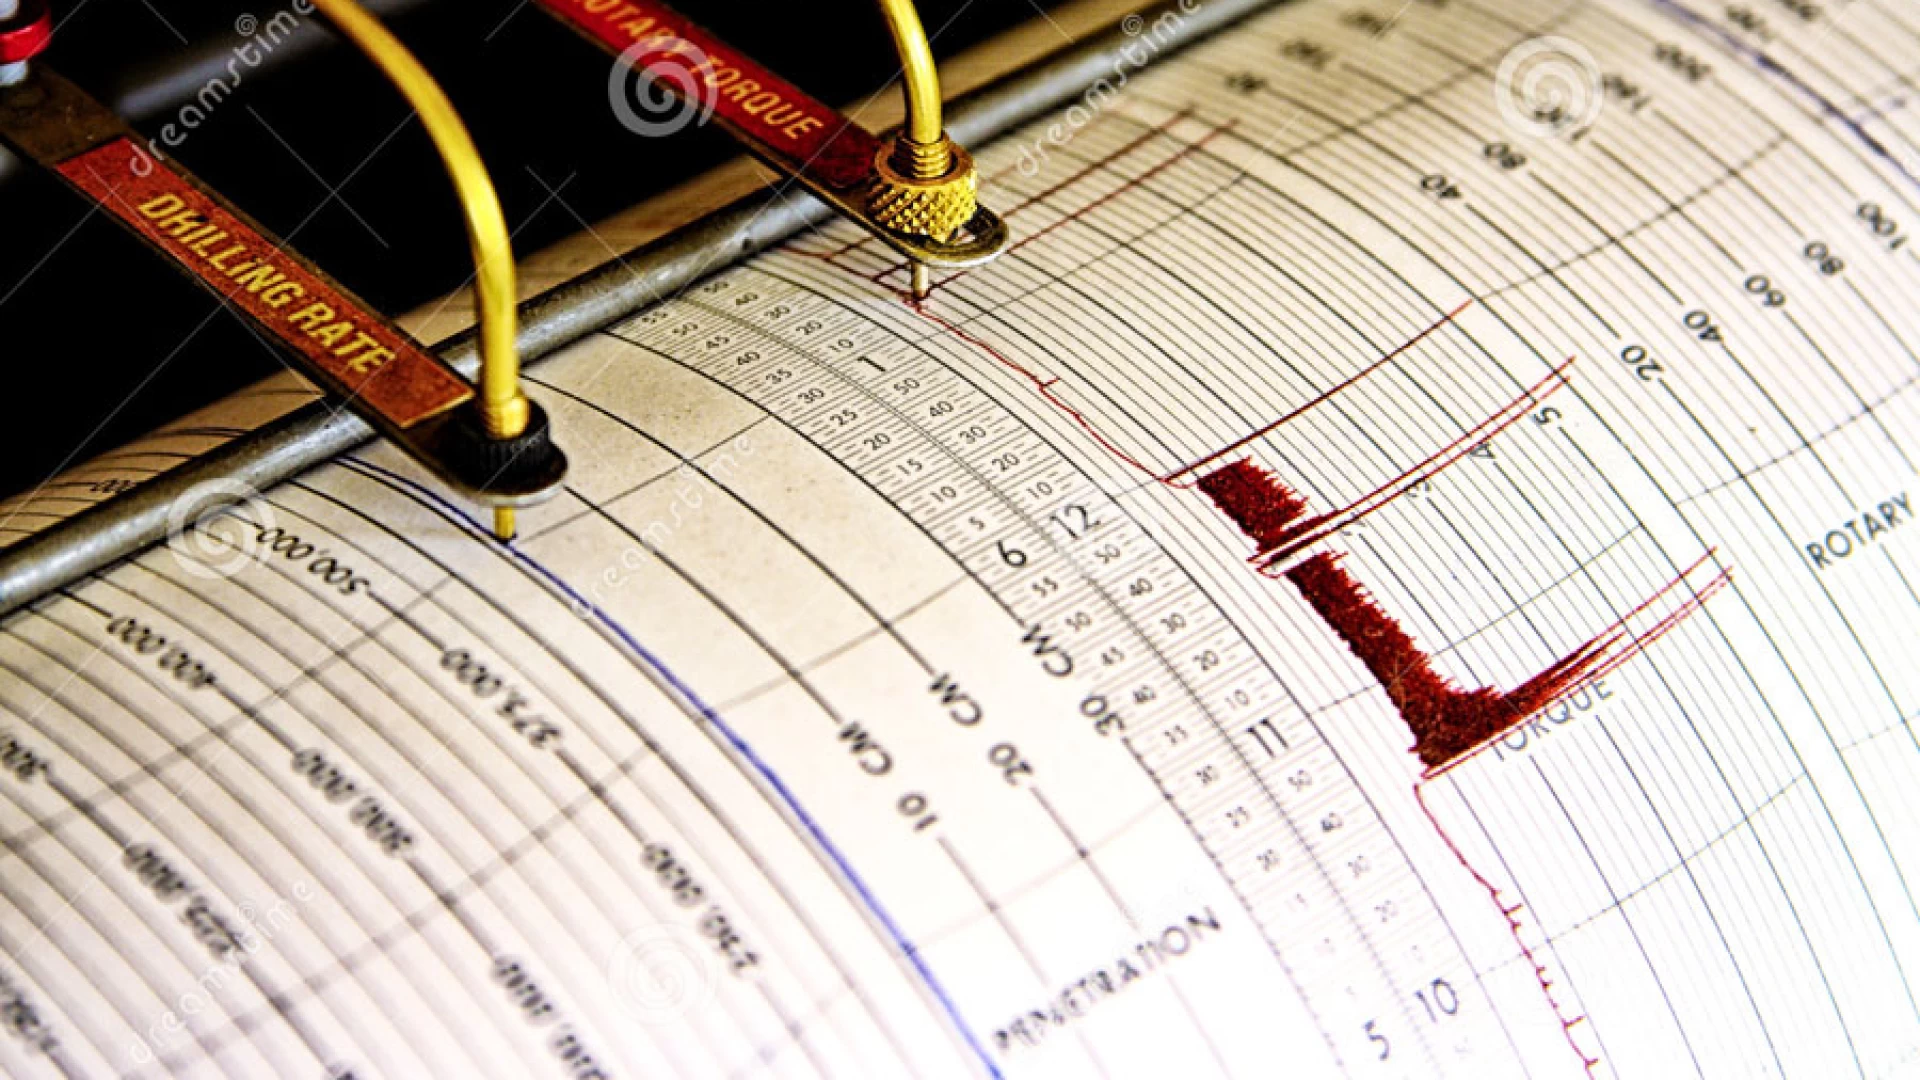 Scossa di terremoto in provincia di Isernia registrata nella serata di ieri. Epicentro tra Roccasicura e Vastogirardi. Evento di magnitudo 2.1.